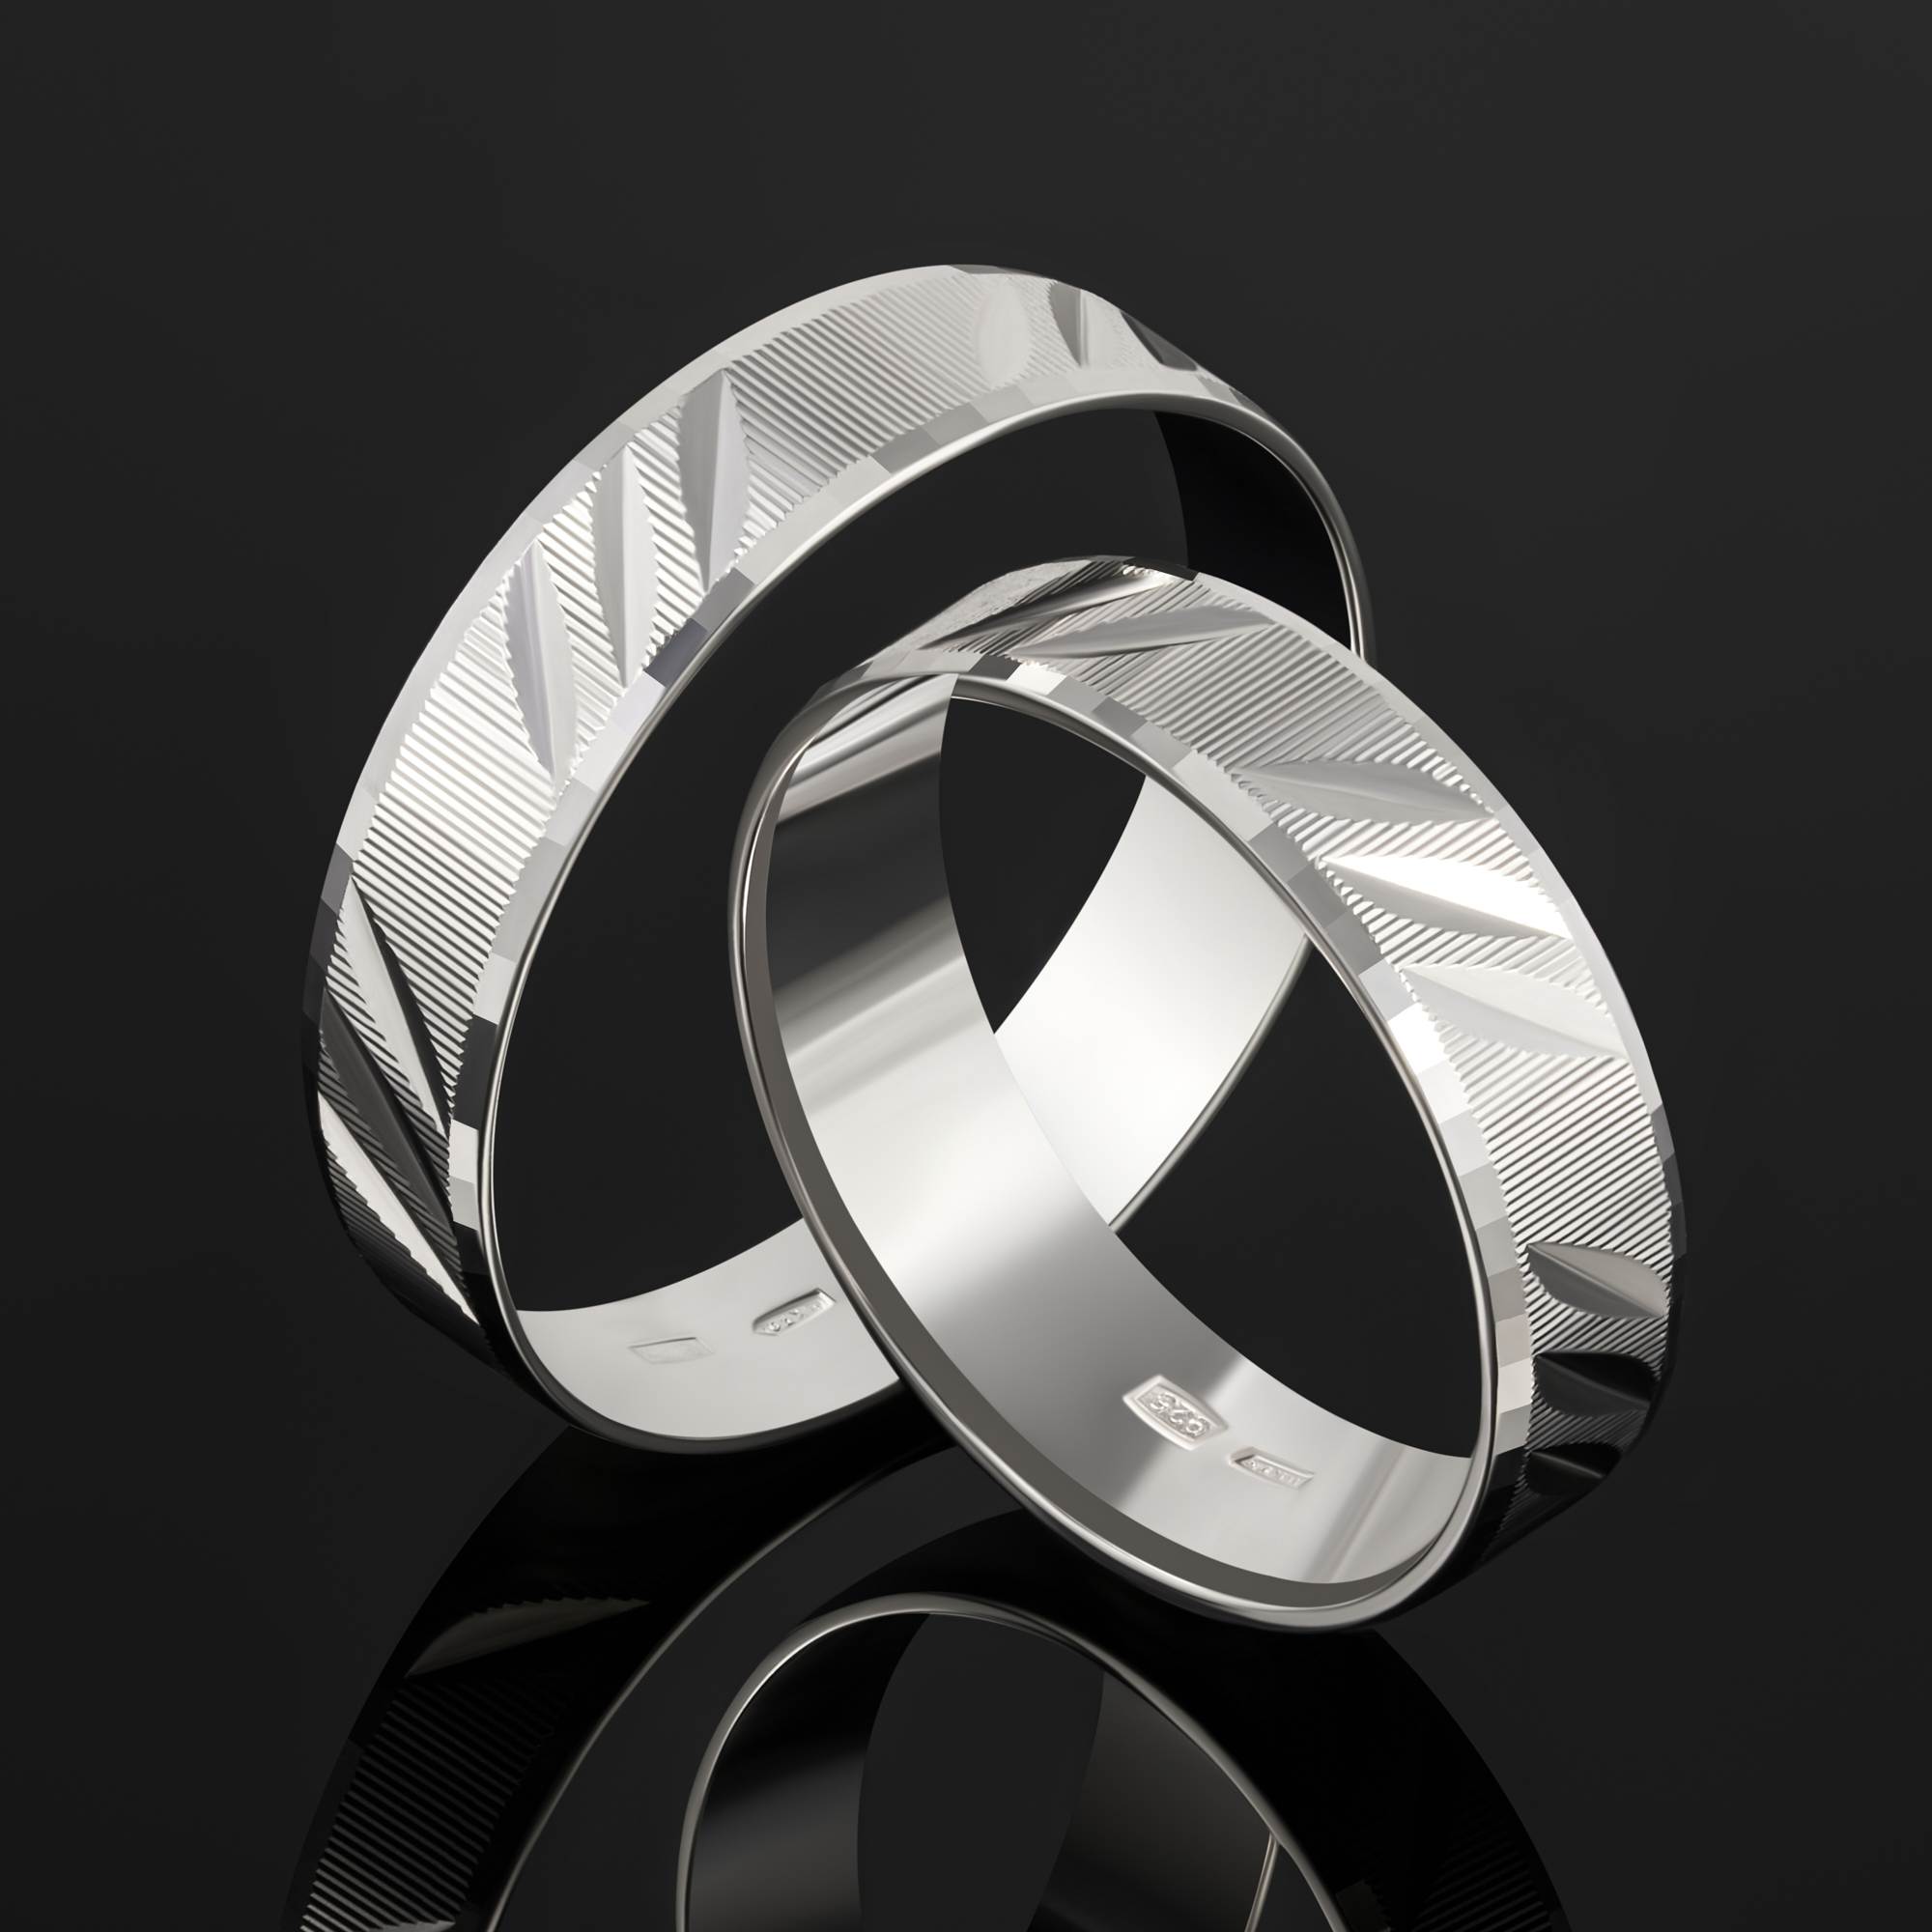 Серебряное кольцо обручальное Золотая подкова ЯВ821423-50/2С, размеры от 16 до 22.5